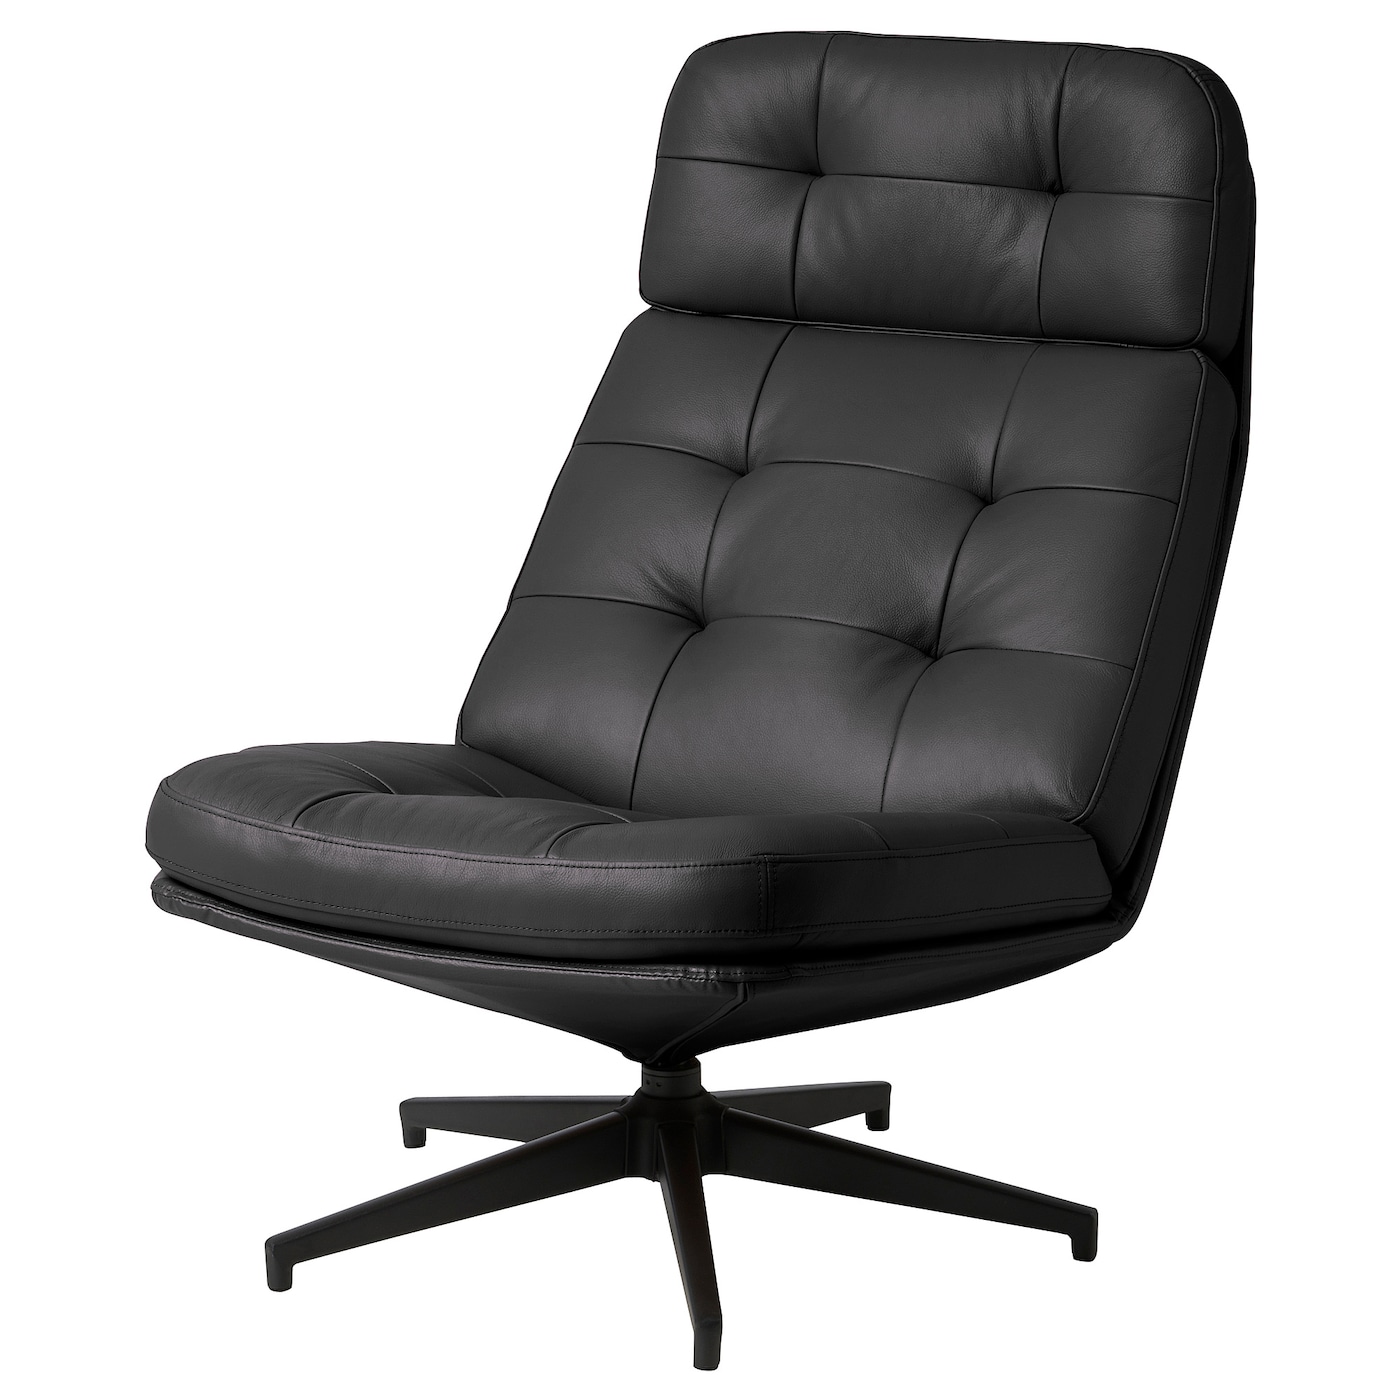 ХАВБЕРГ Вращающееся кресло, Гранн/Бомстад черный HAVBERG IKEA офисное кресло массажное игровое кресло с rgb подсветкой эргономичное кресло для геймеров вращающееся кресло для студенческого компьютера